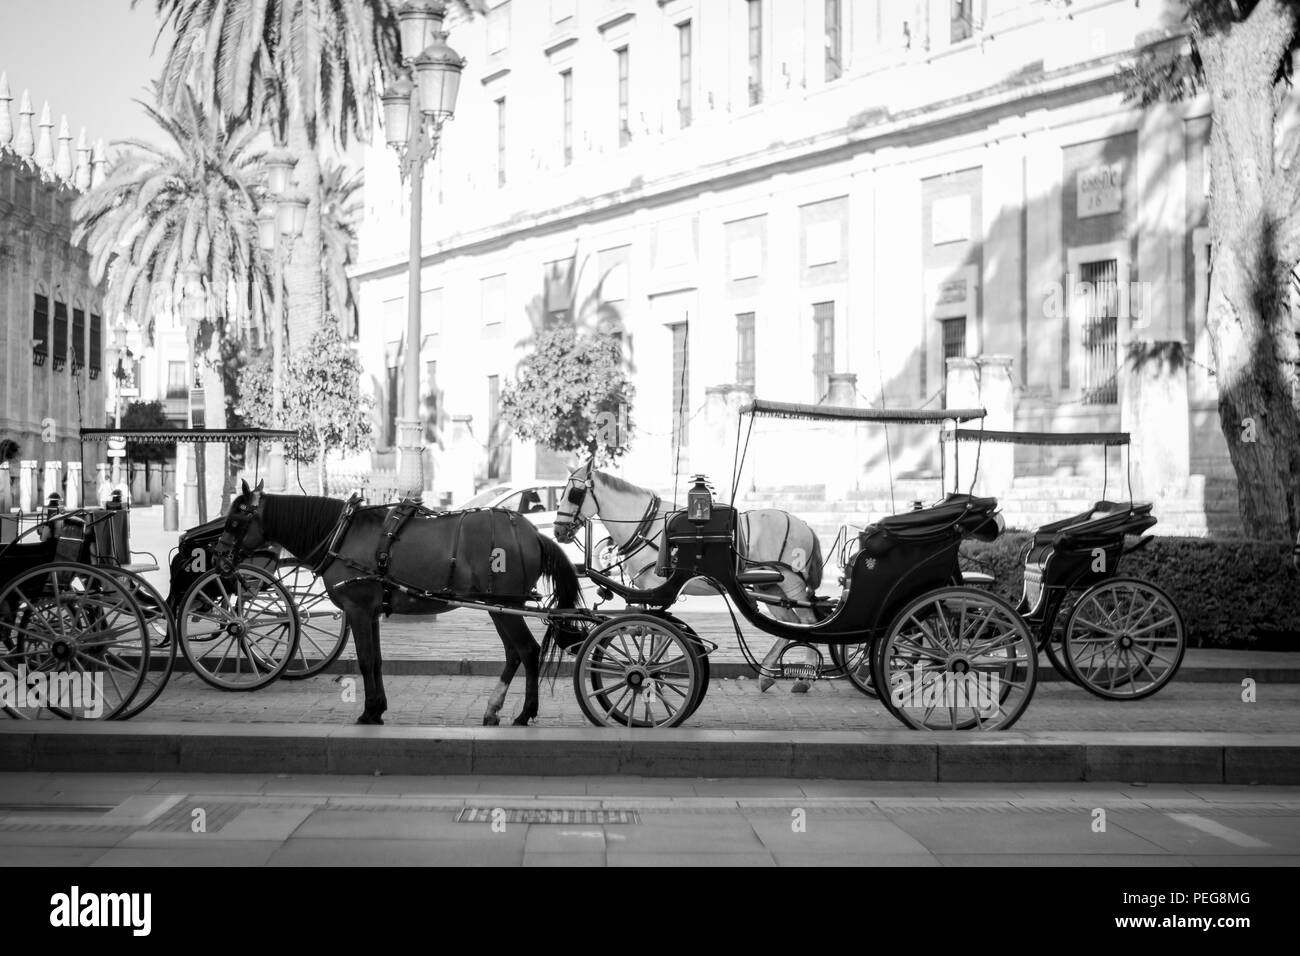 horses on the streets of sevilla Stock Photo